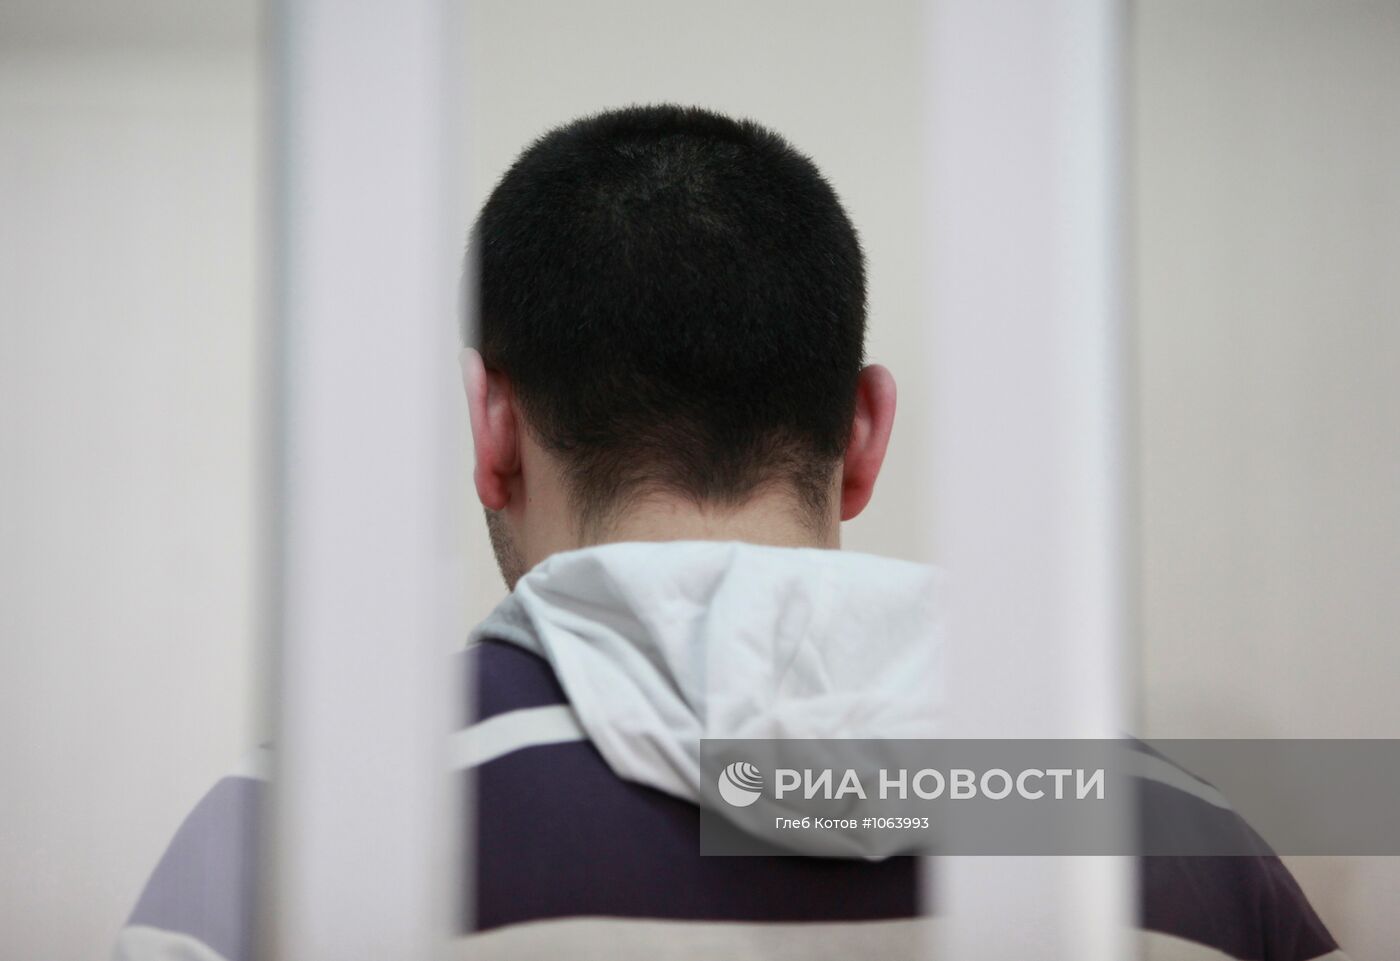 Оглашение приговора Черкесу Рустамову